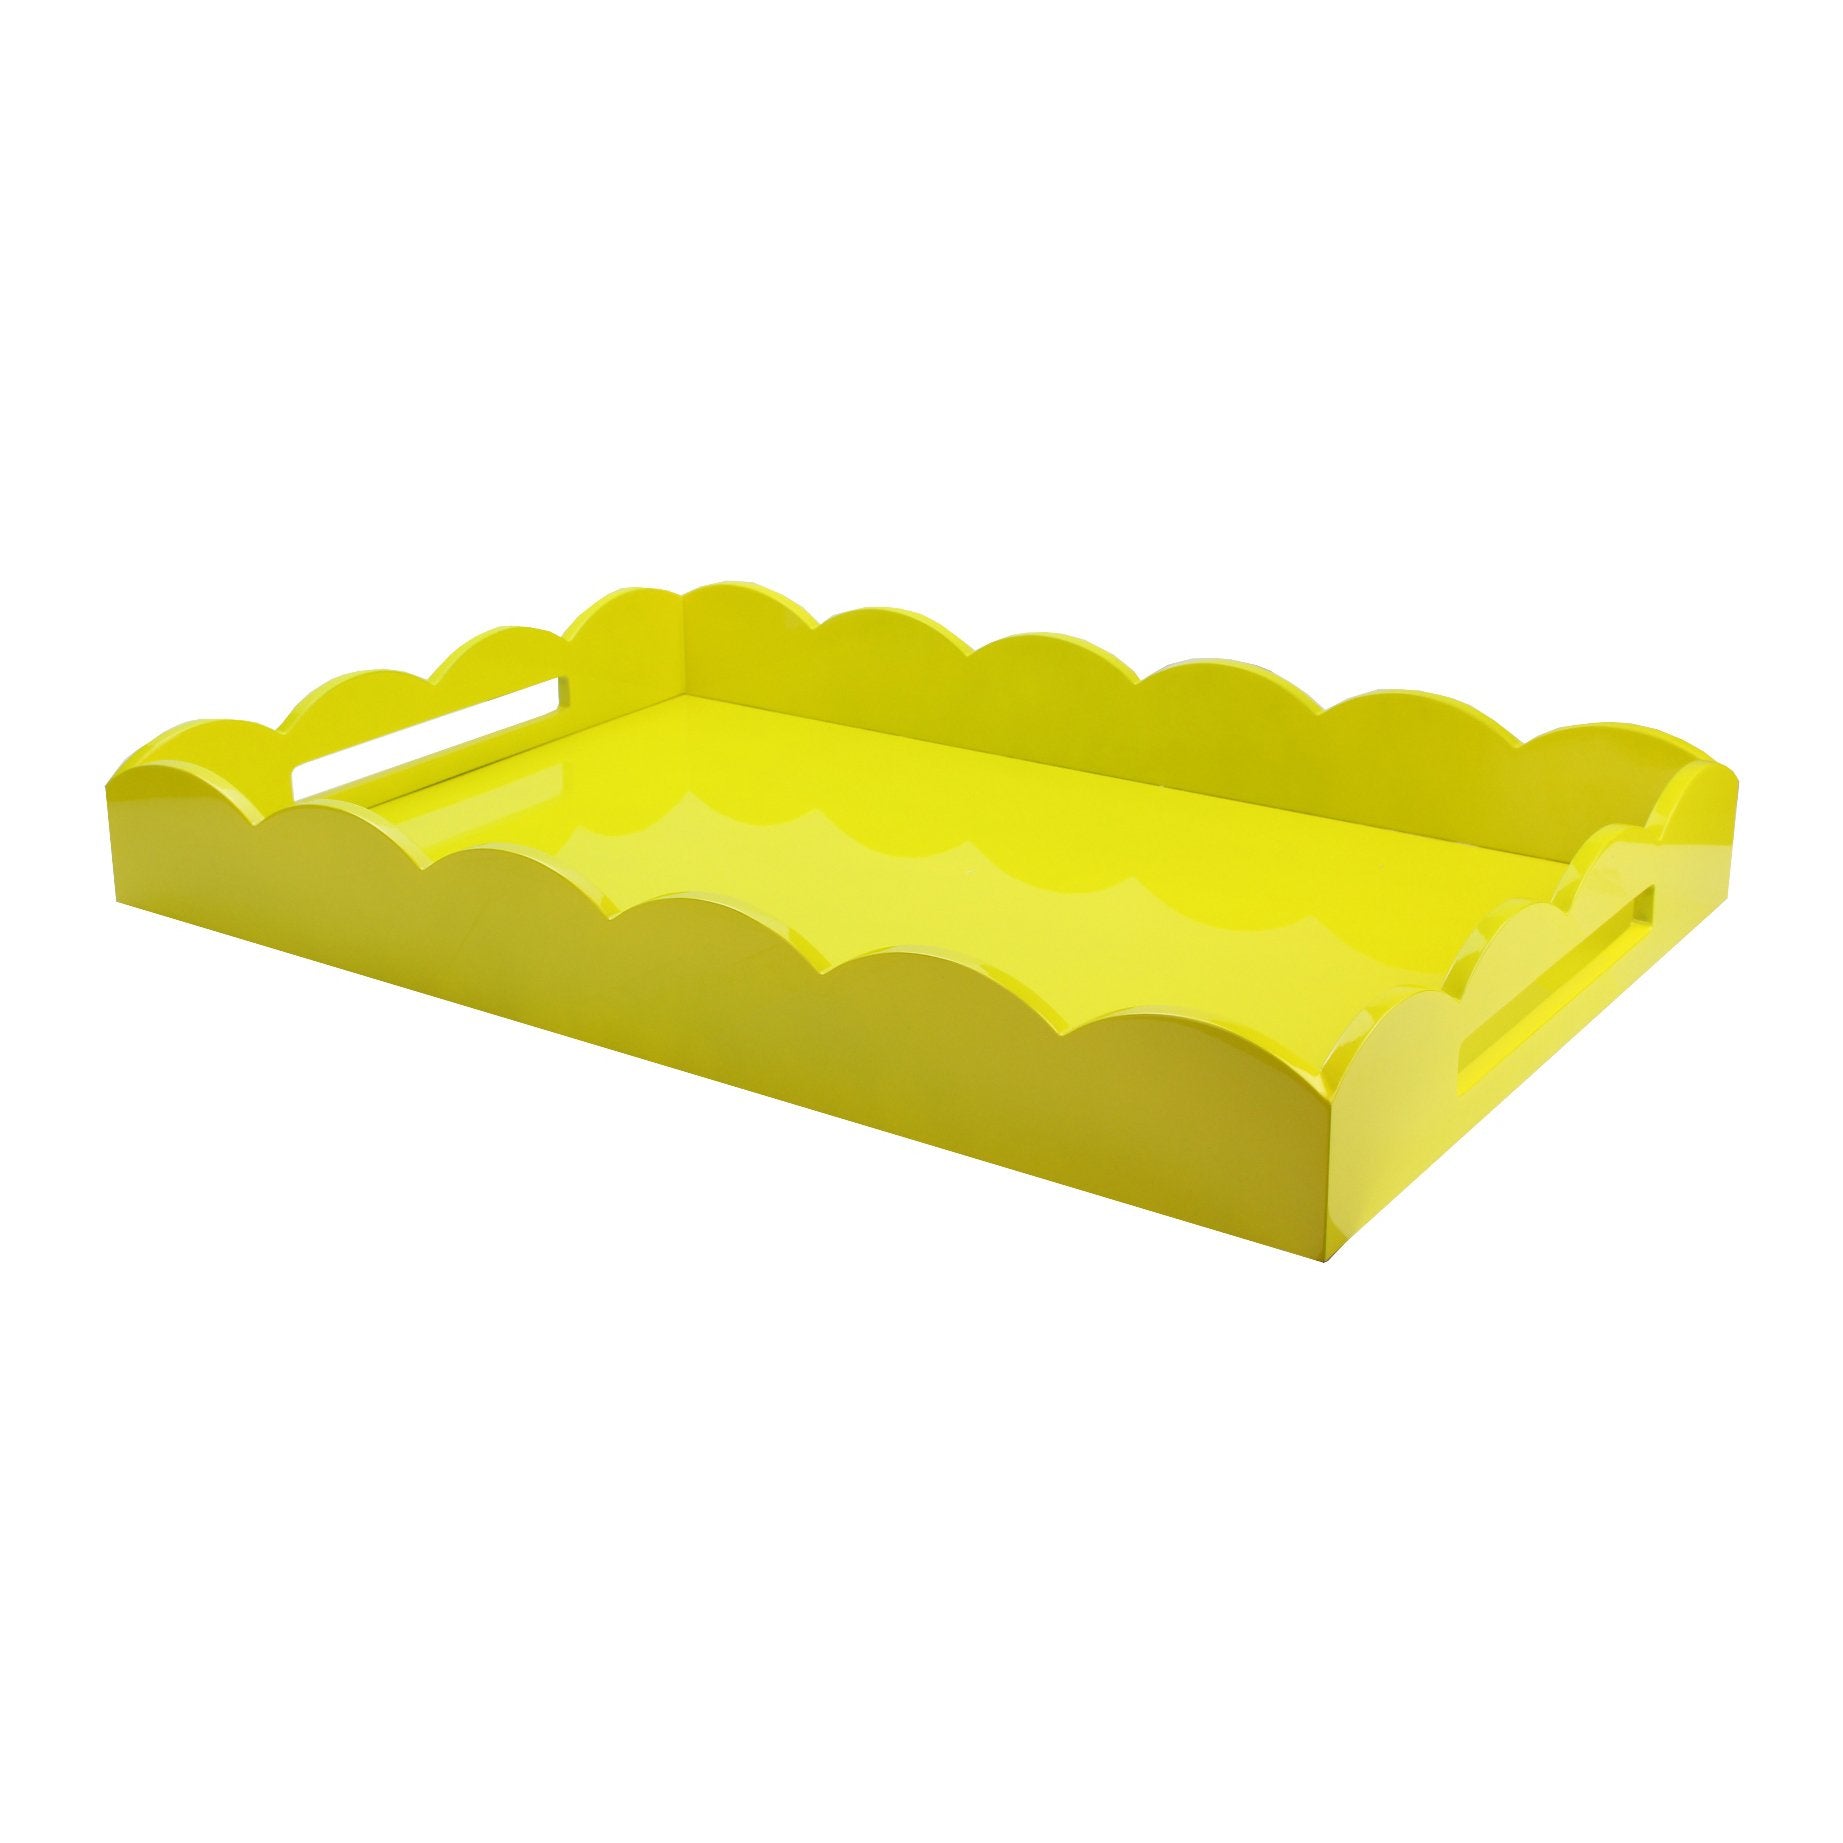 26x17 Scalloped Tray Yellow